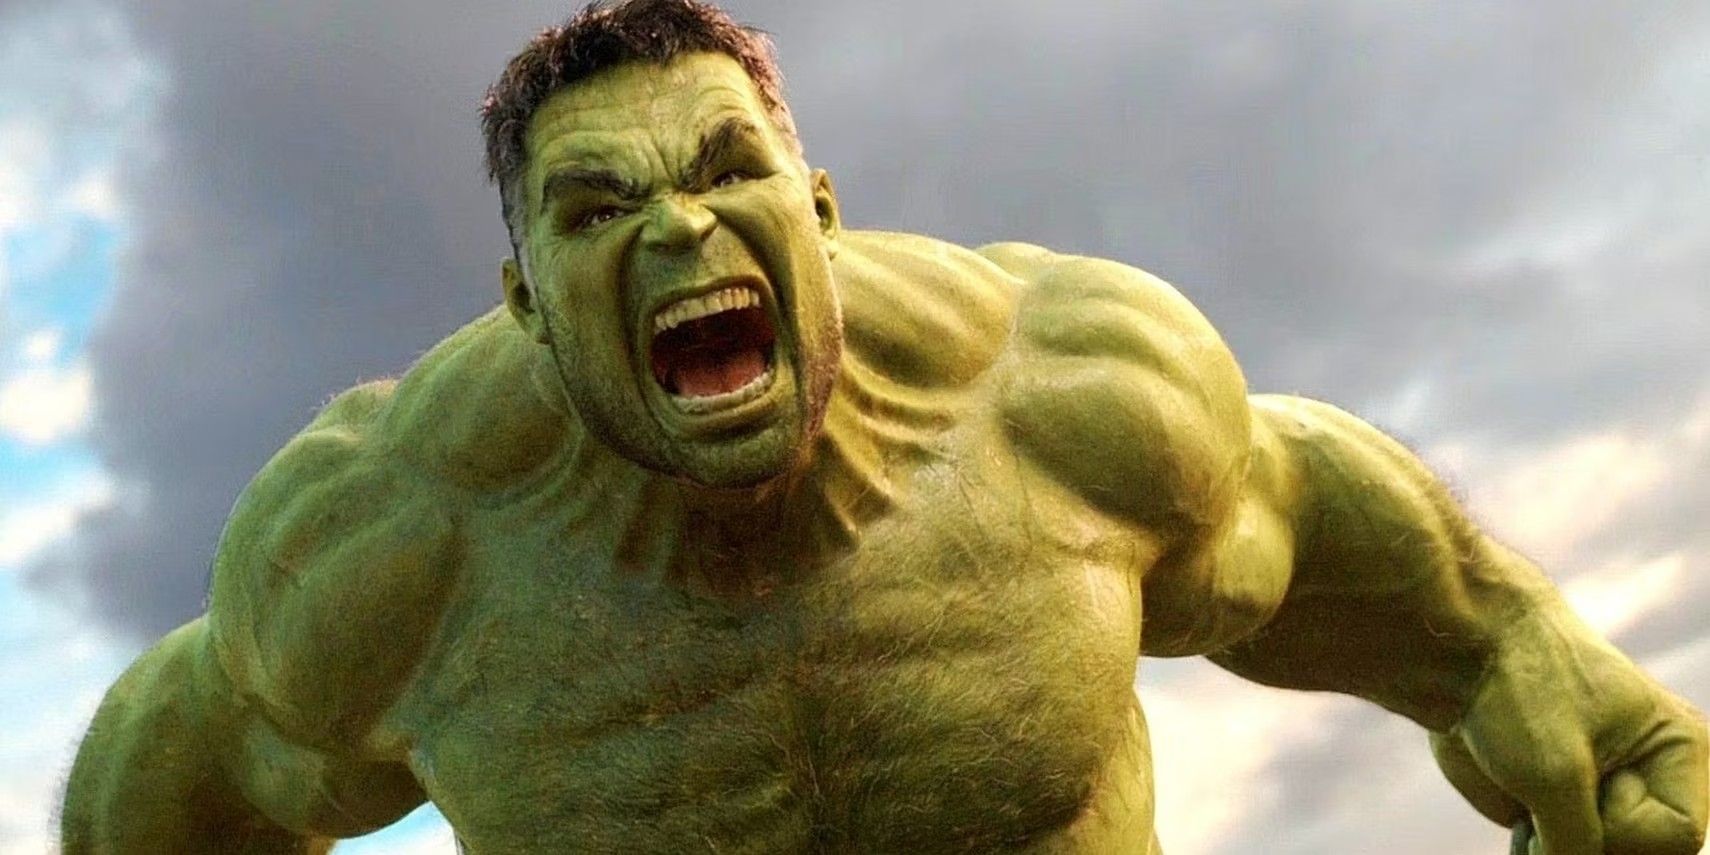 Hulk (Mark Ruffalo) roaring in the MCU